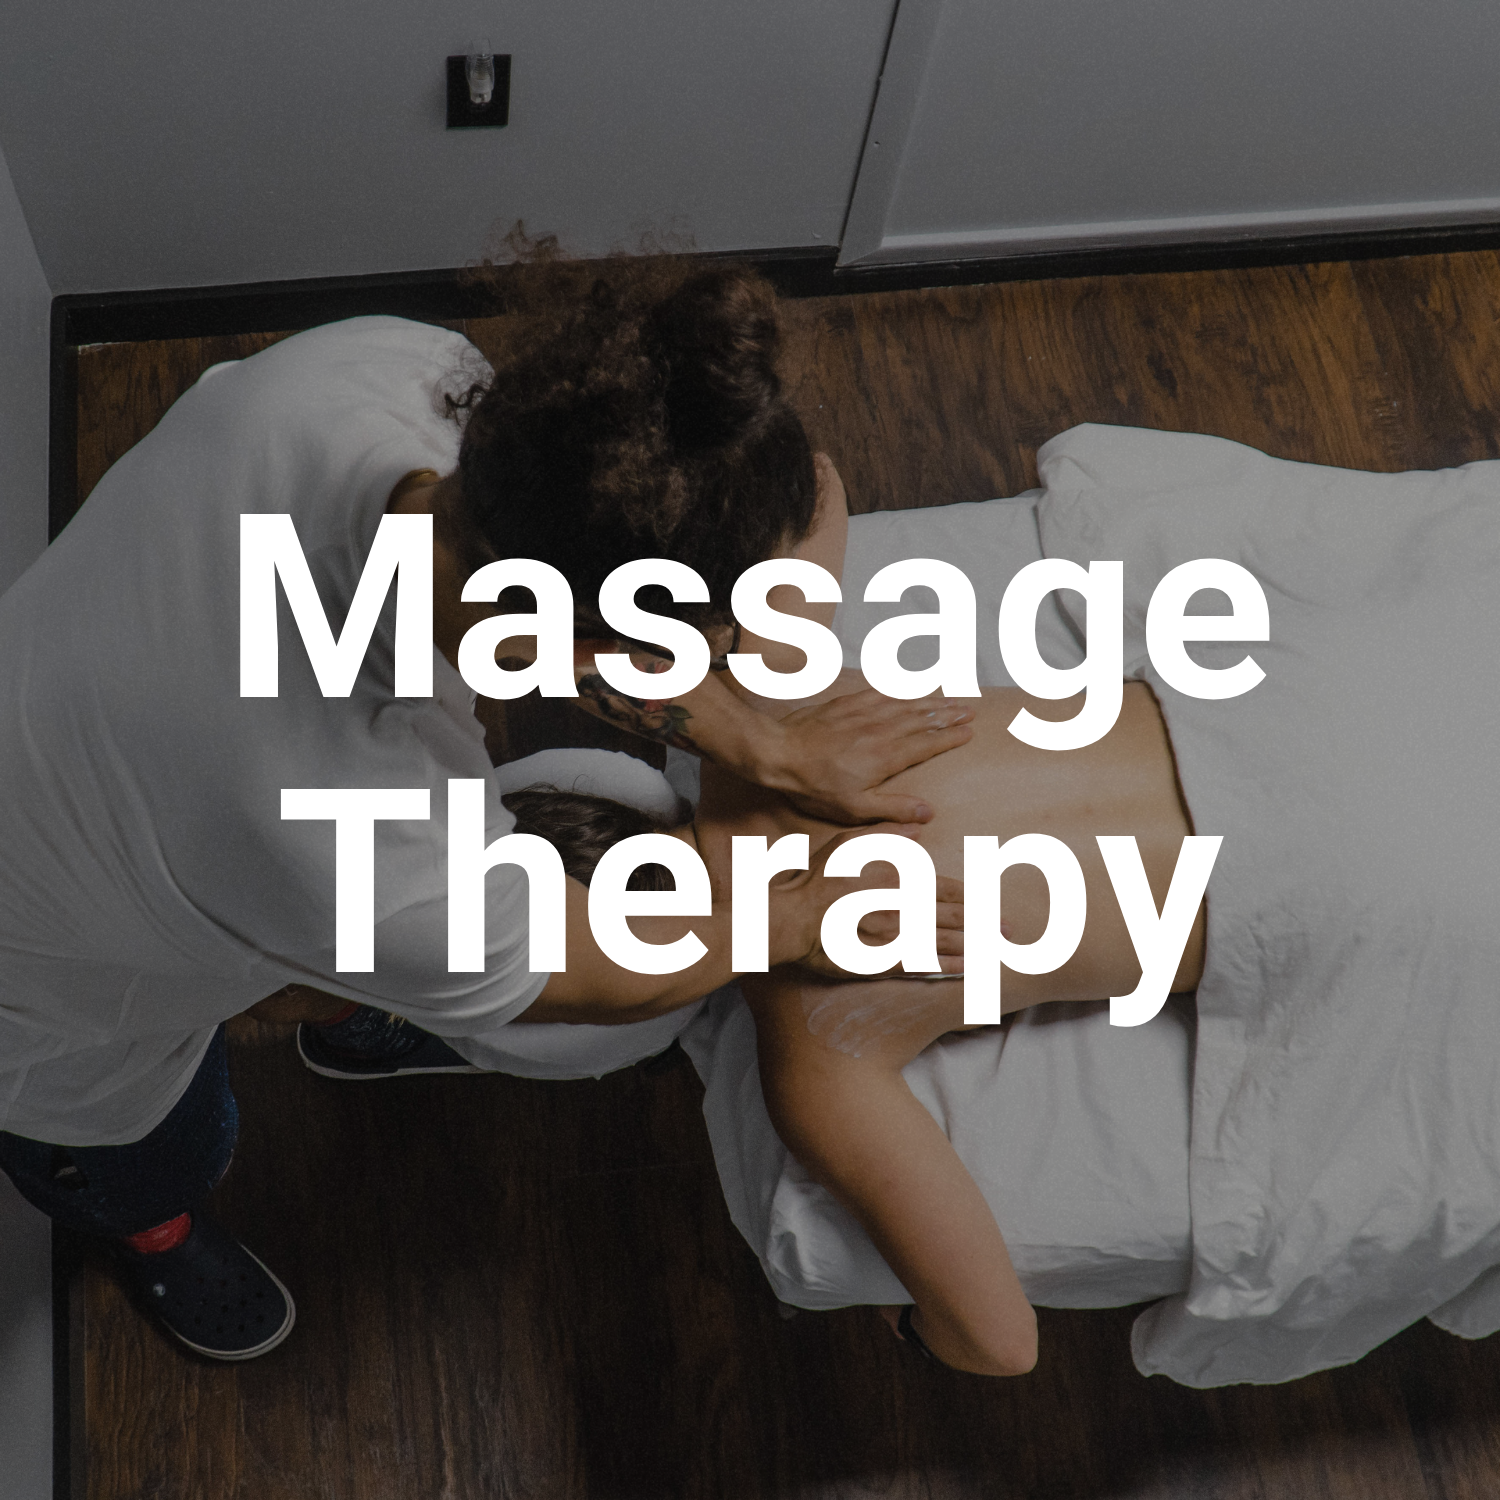 adapt massage therapy